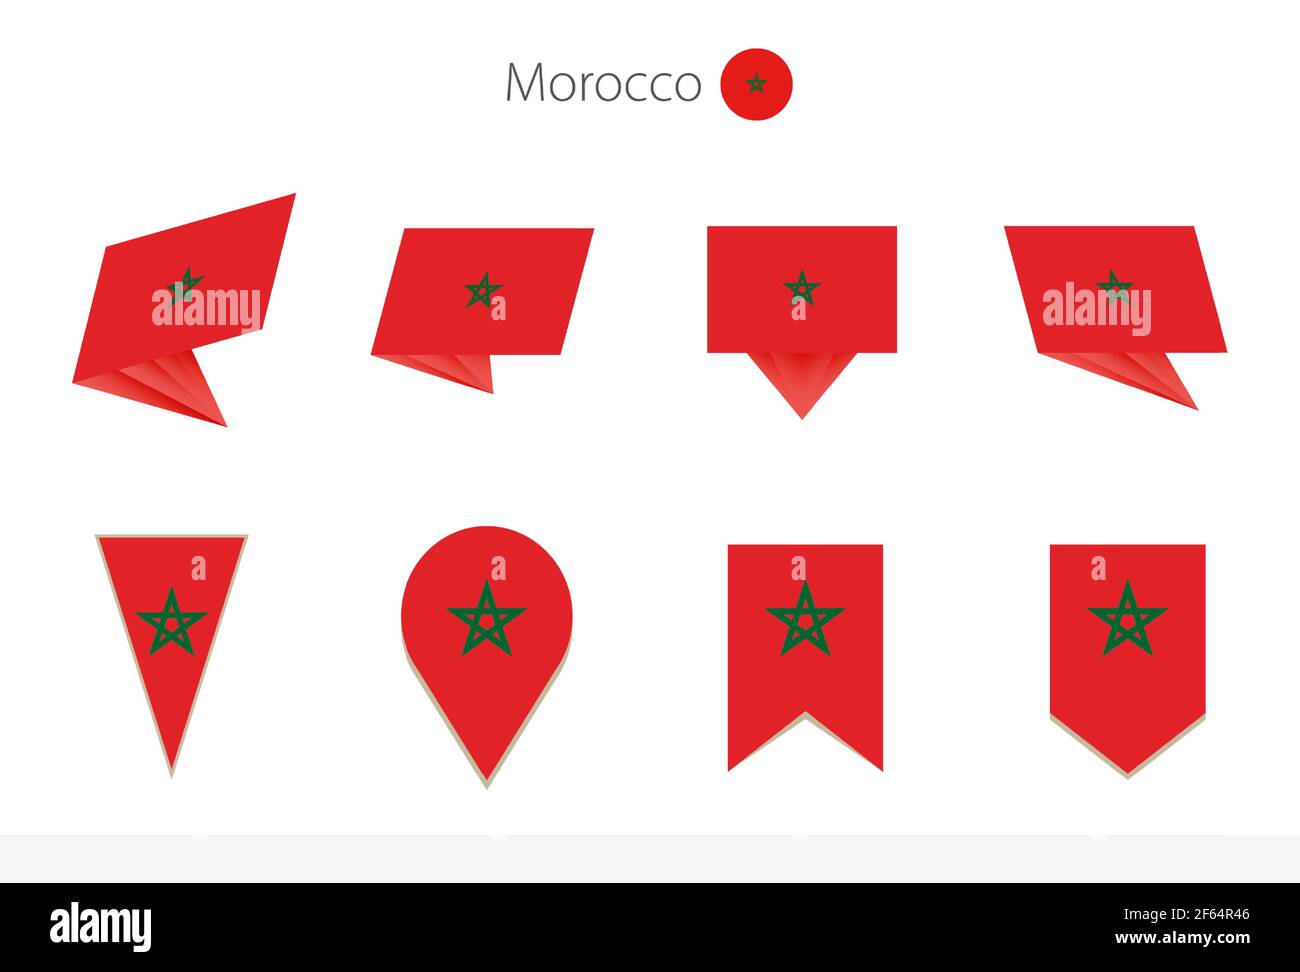 Collezione nazionale di bandiere marocchine, otto versioni di bandiere vettoriali marocchine. Illustrazione vettoriale. Illustrazione Vettoriale